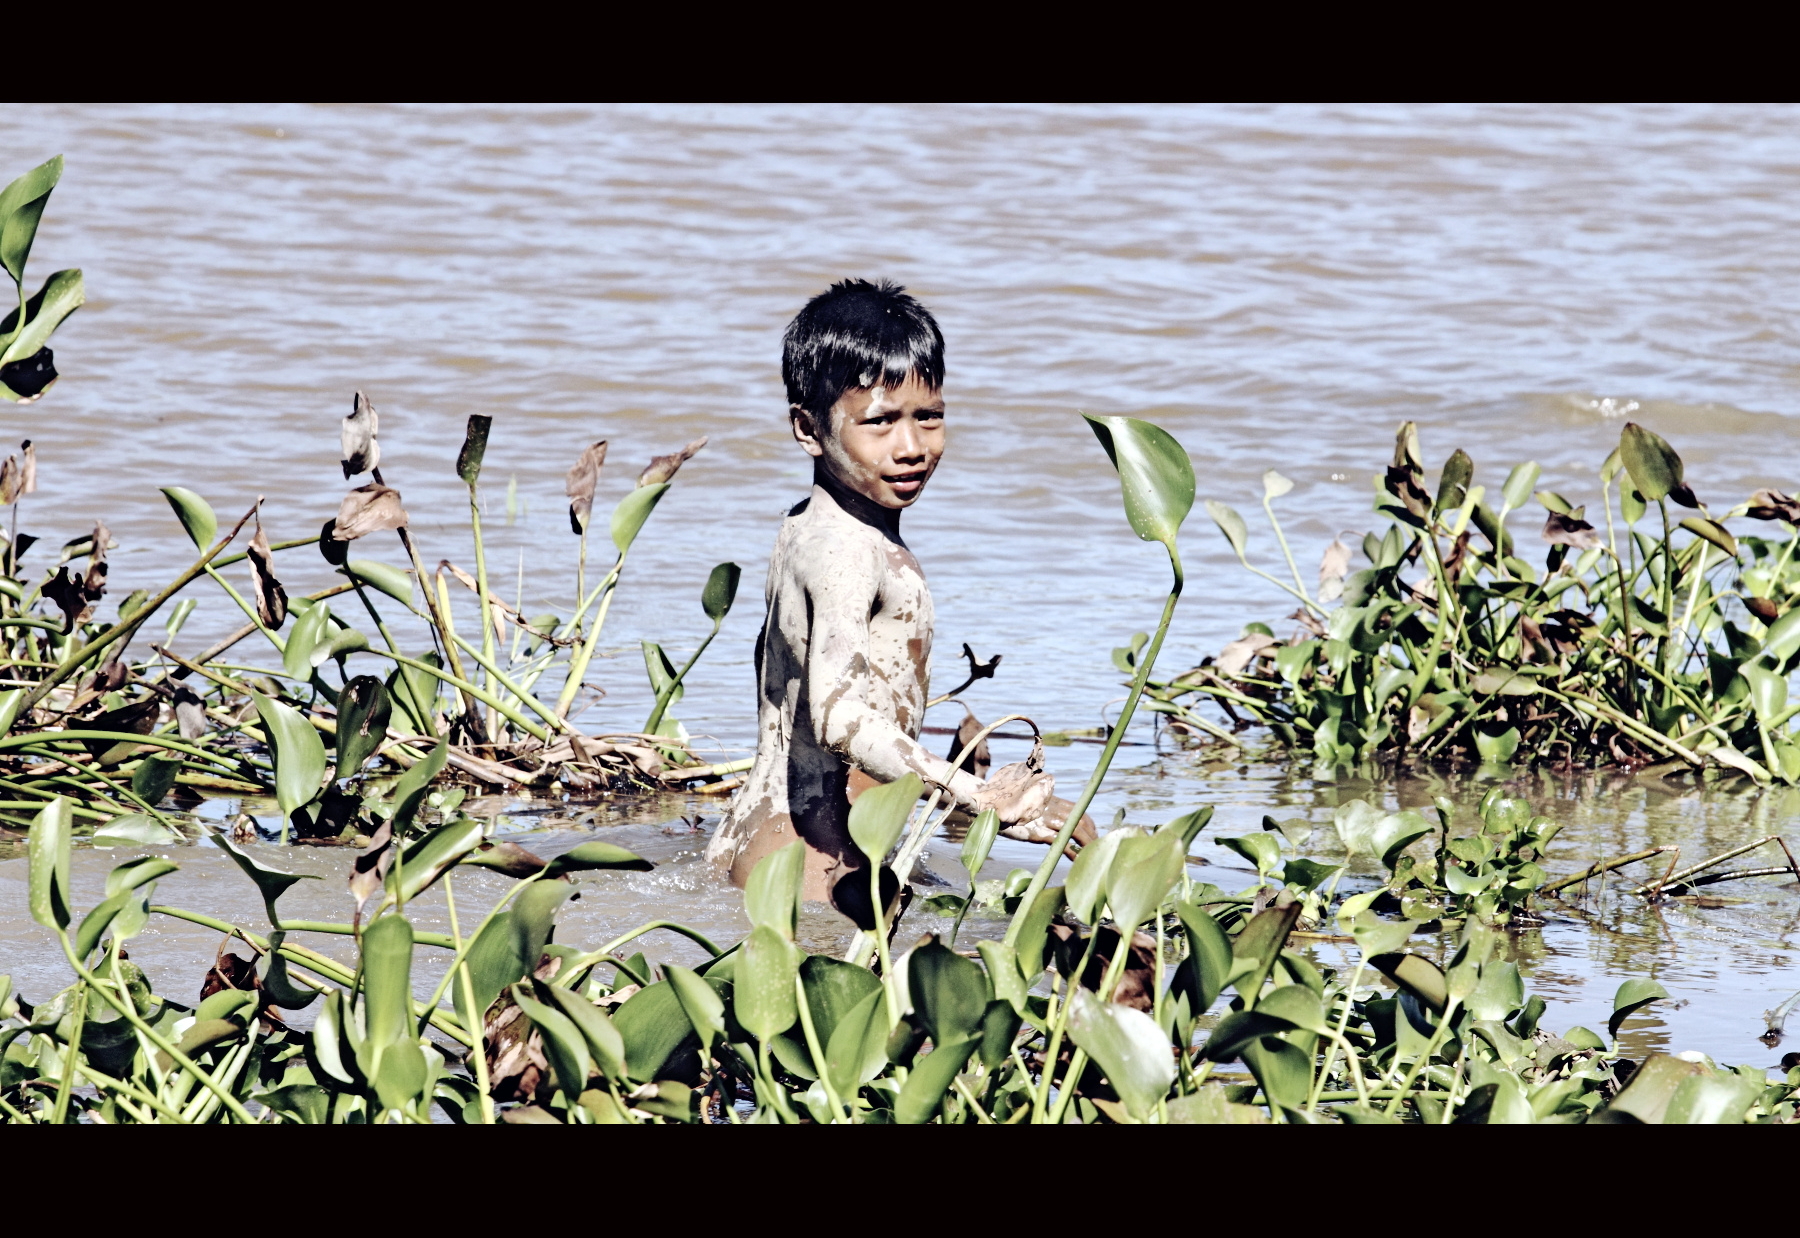 老挝戏水少年美篇图片